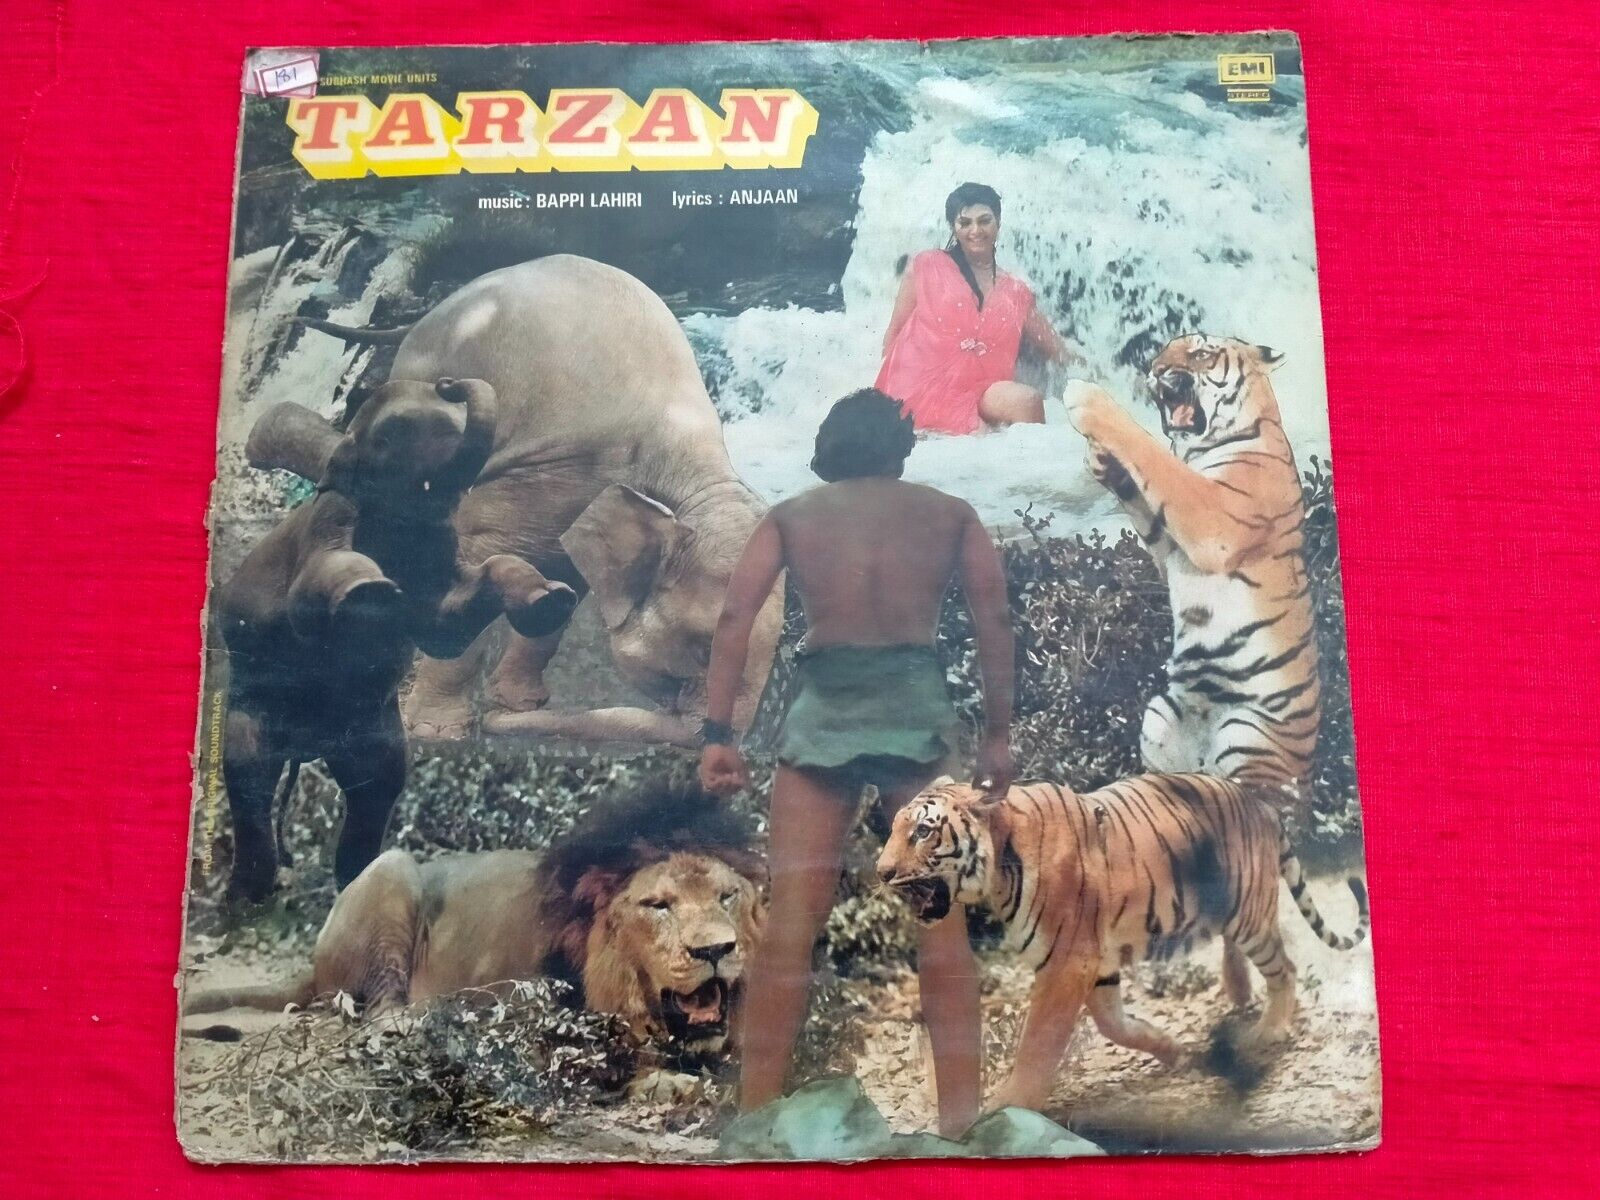 TARZAN BAPPI LAHIRI 1985 jungle funk crazy RARE LP RECORD BOLLYWOOD VINYL vg++